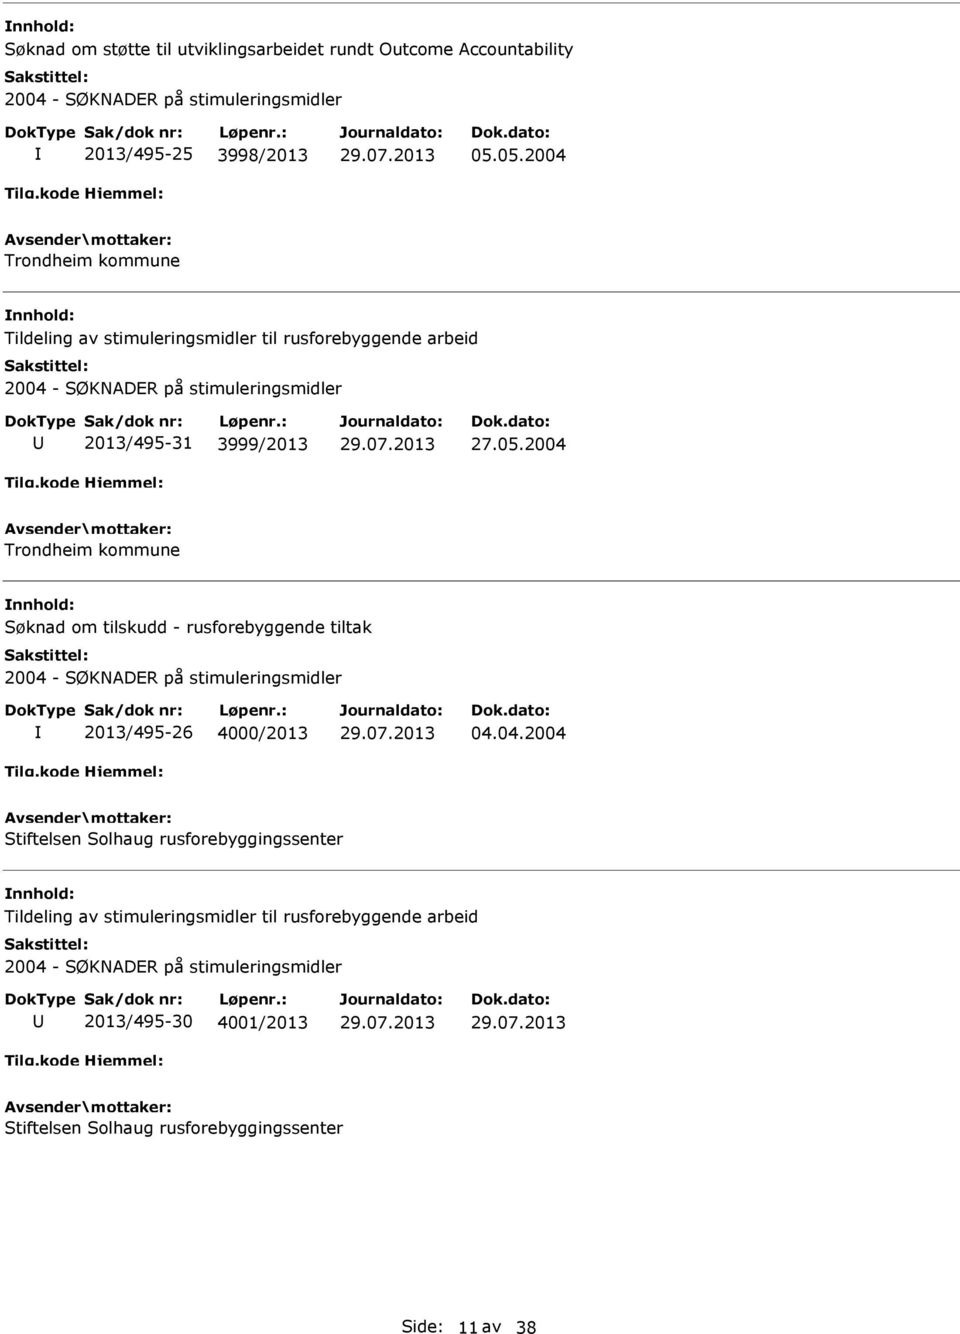 tilskudd - rusforebyggende tiltak 2013/495-26 4000/2013 04.